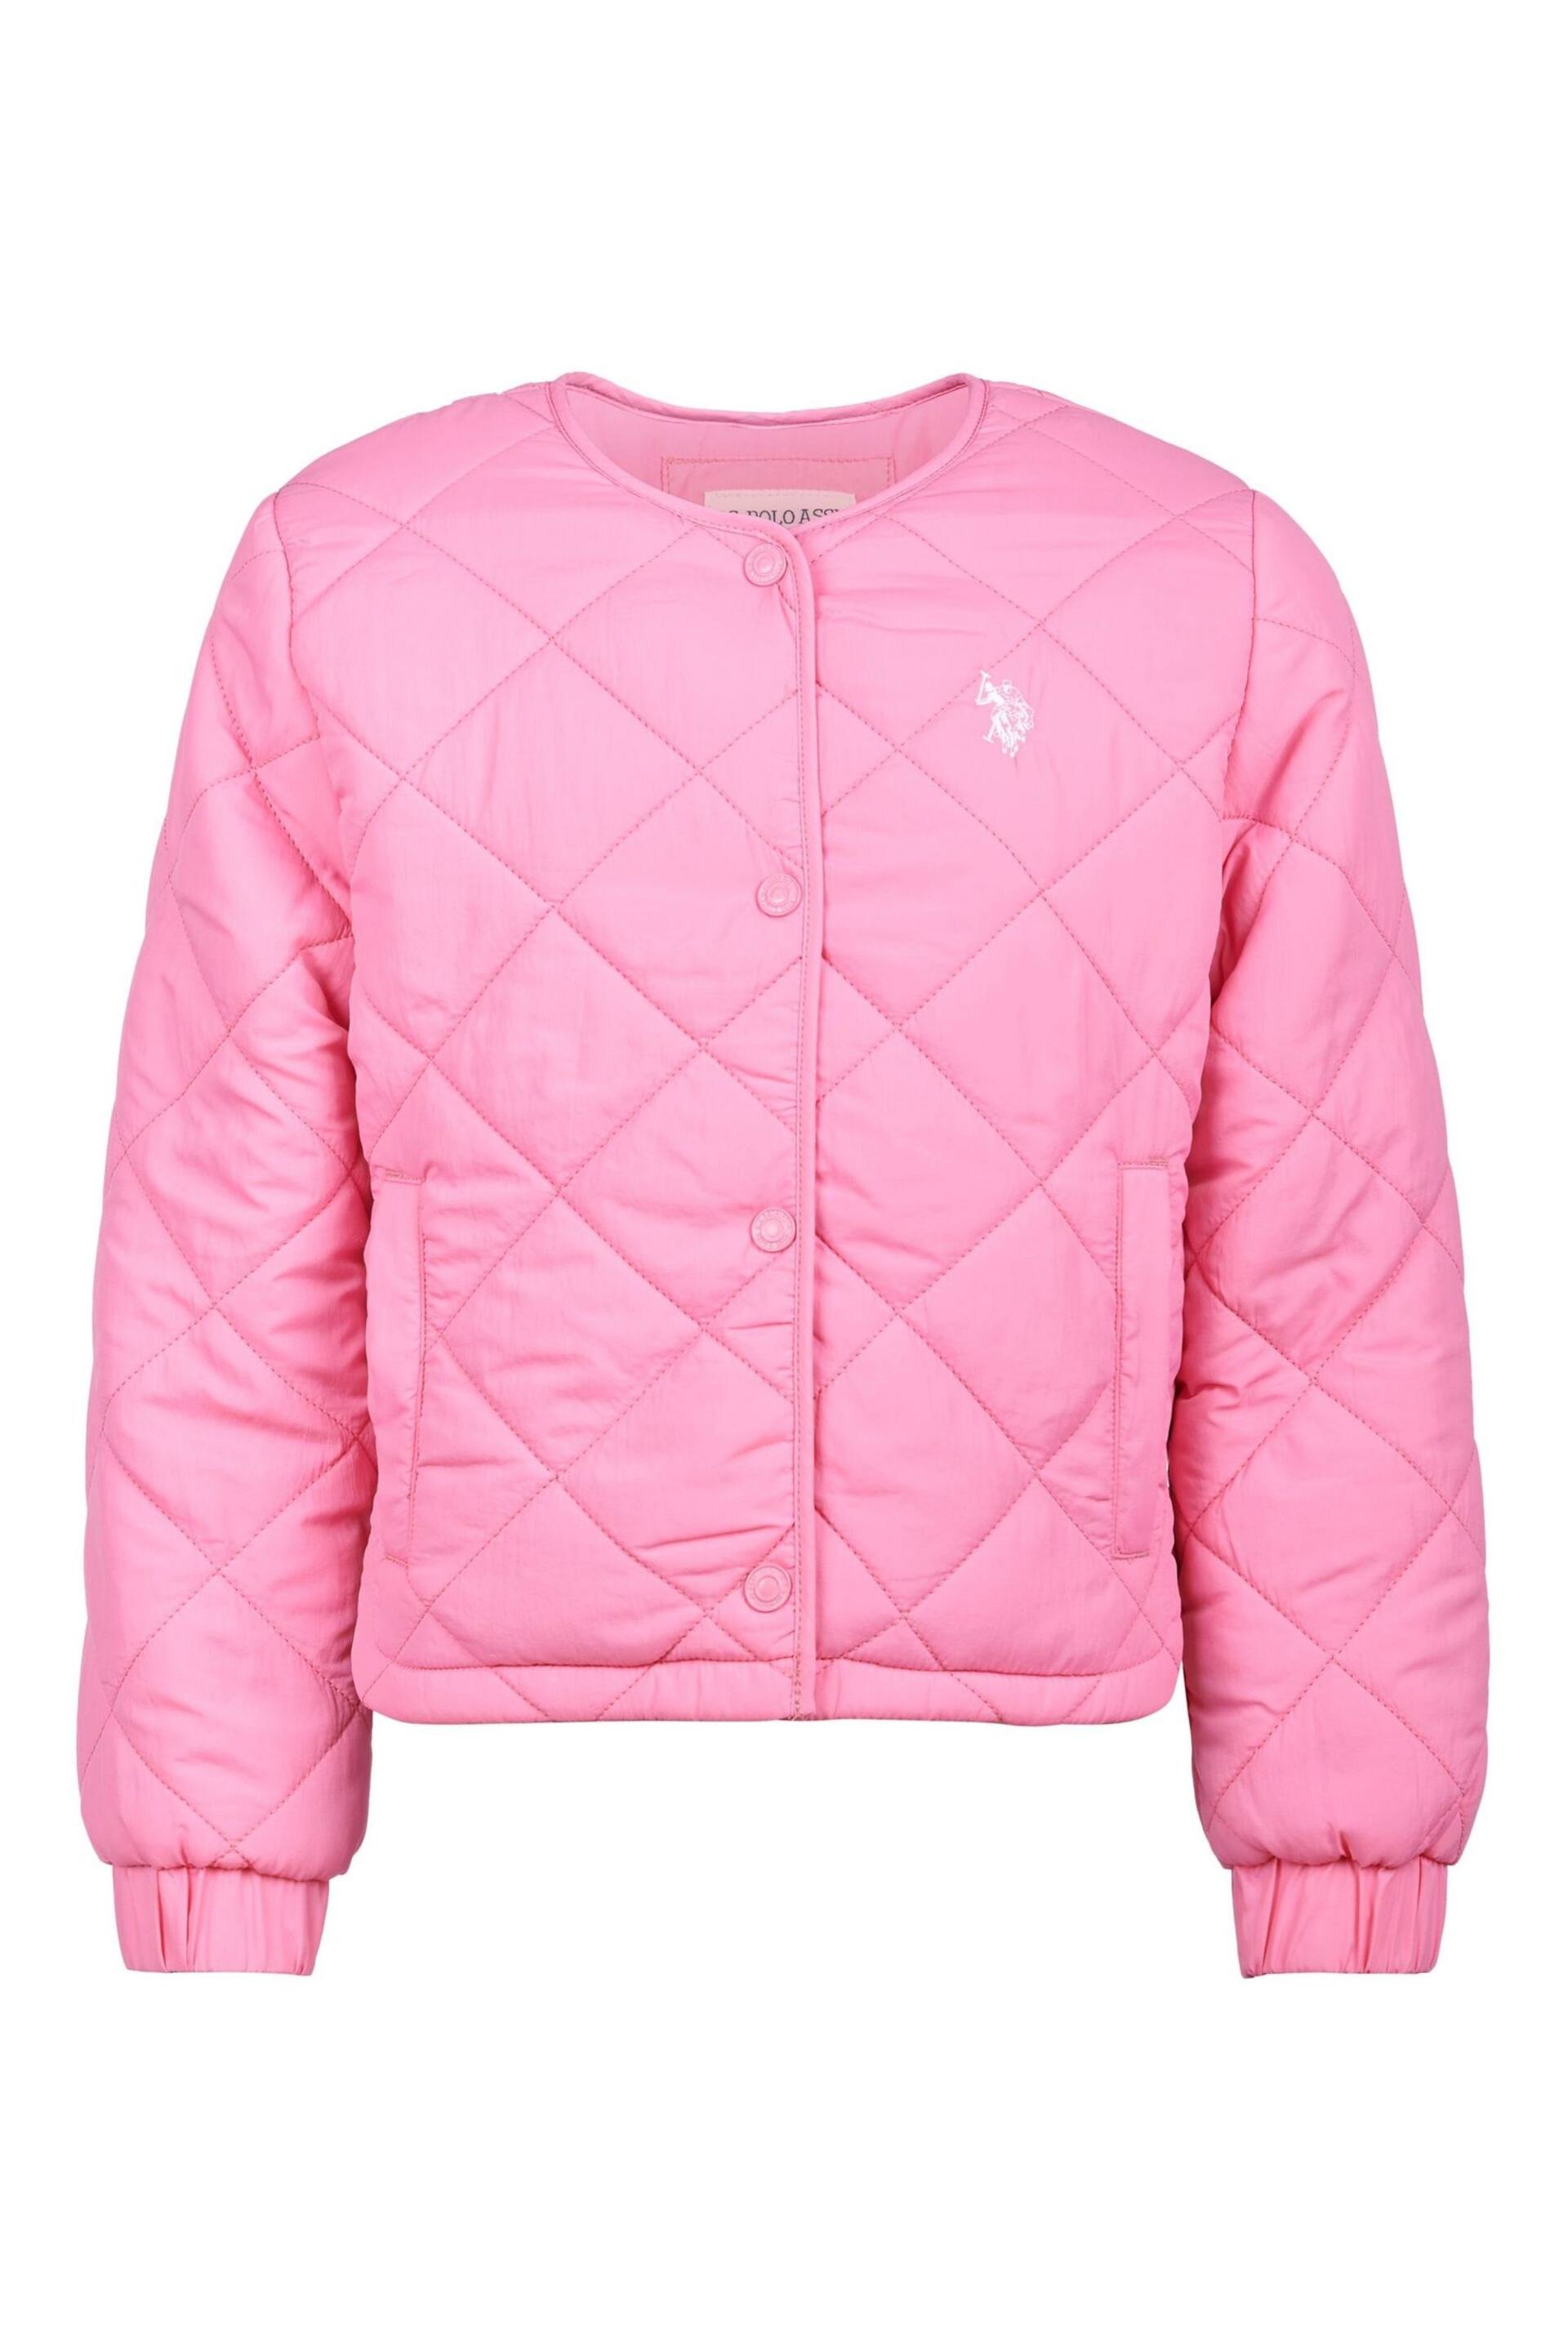 U.S. Polo Assn. Girls Pink Lightweight Puffer Jacket - Image 1 of 5